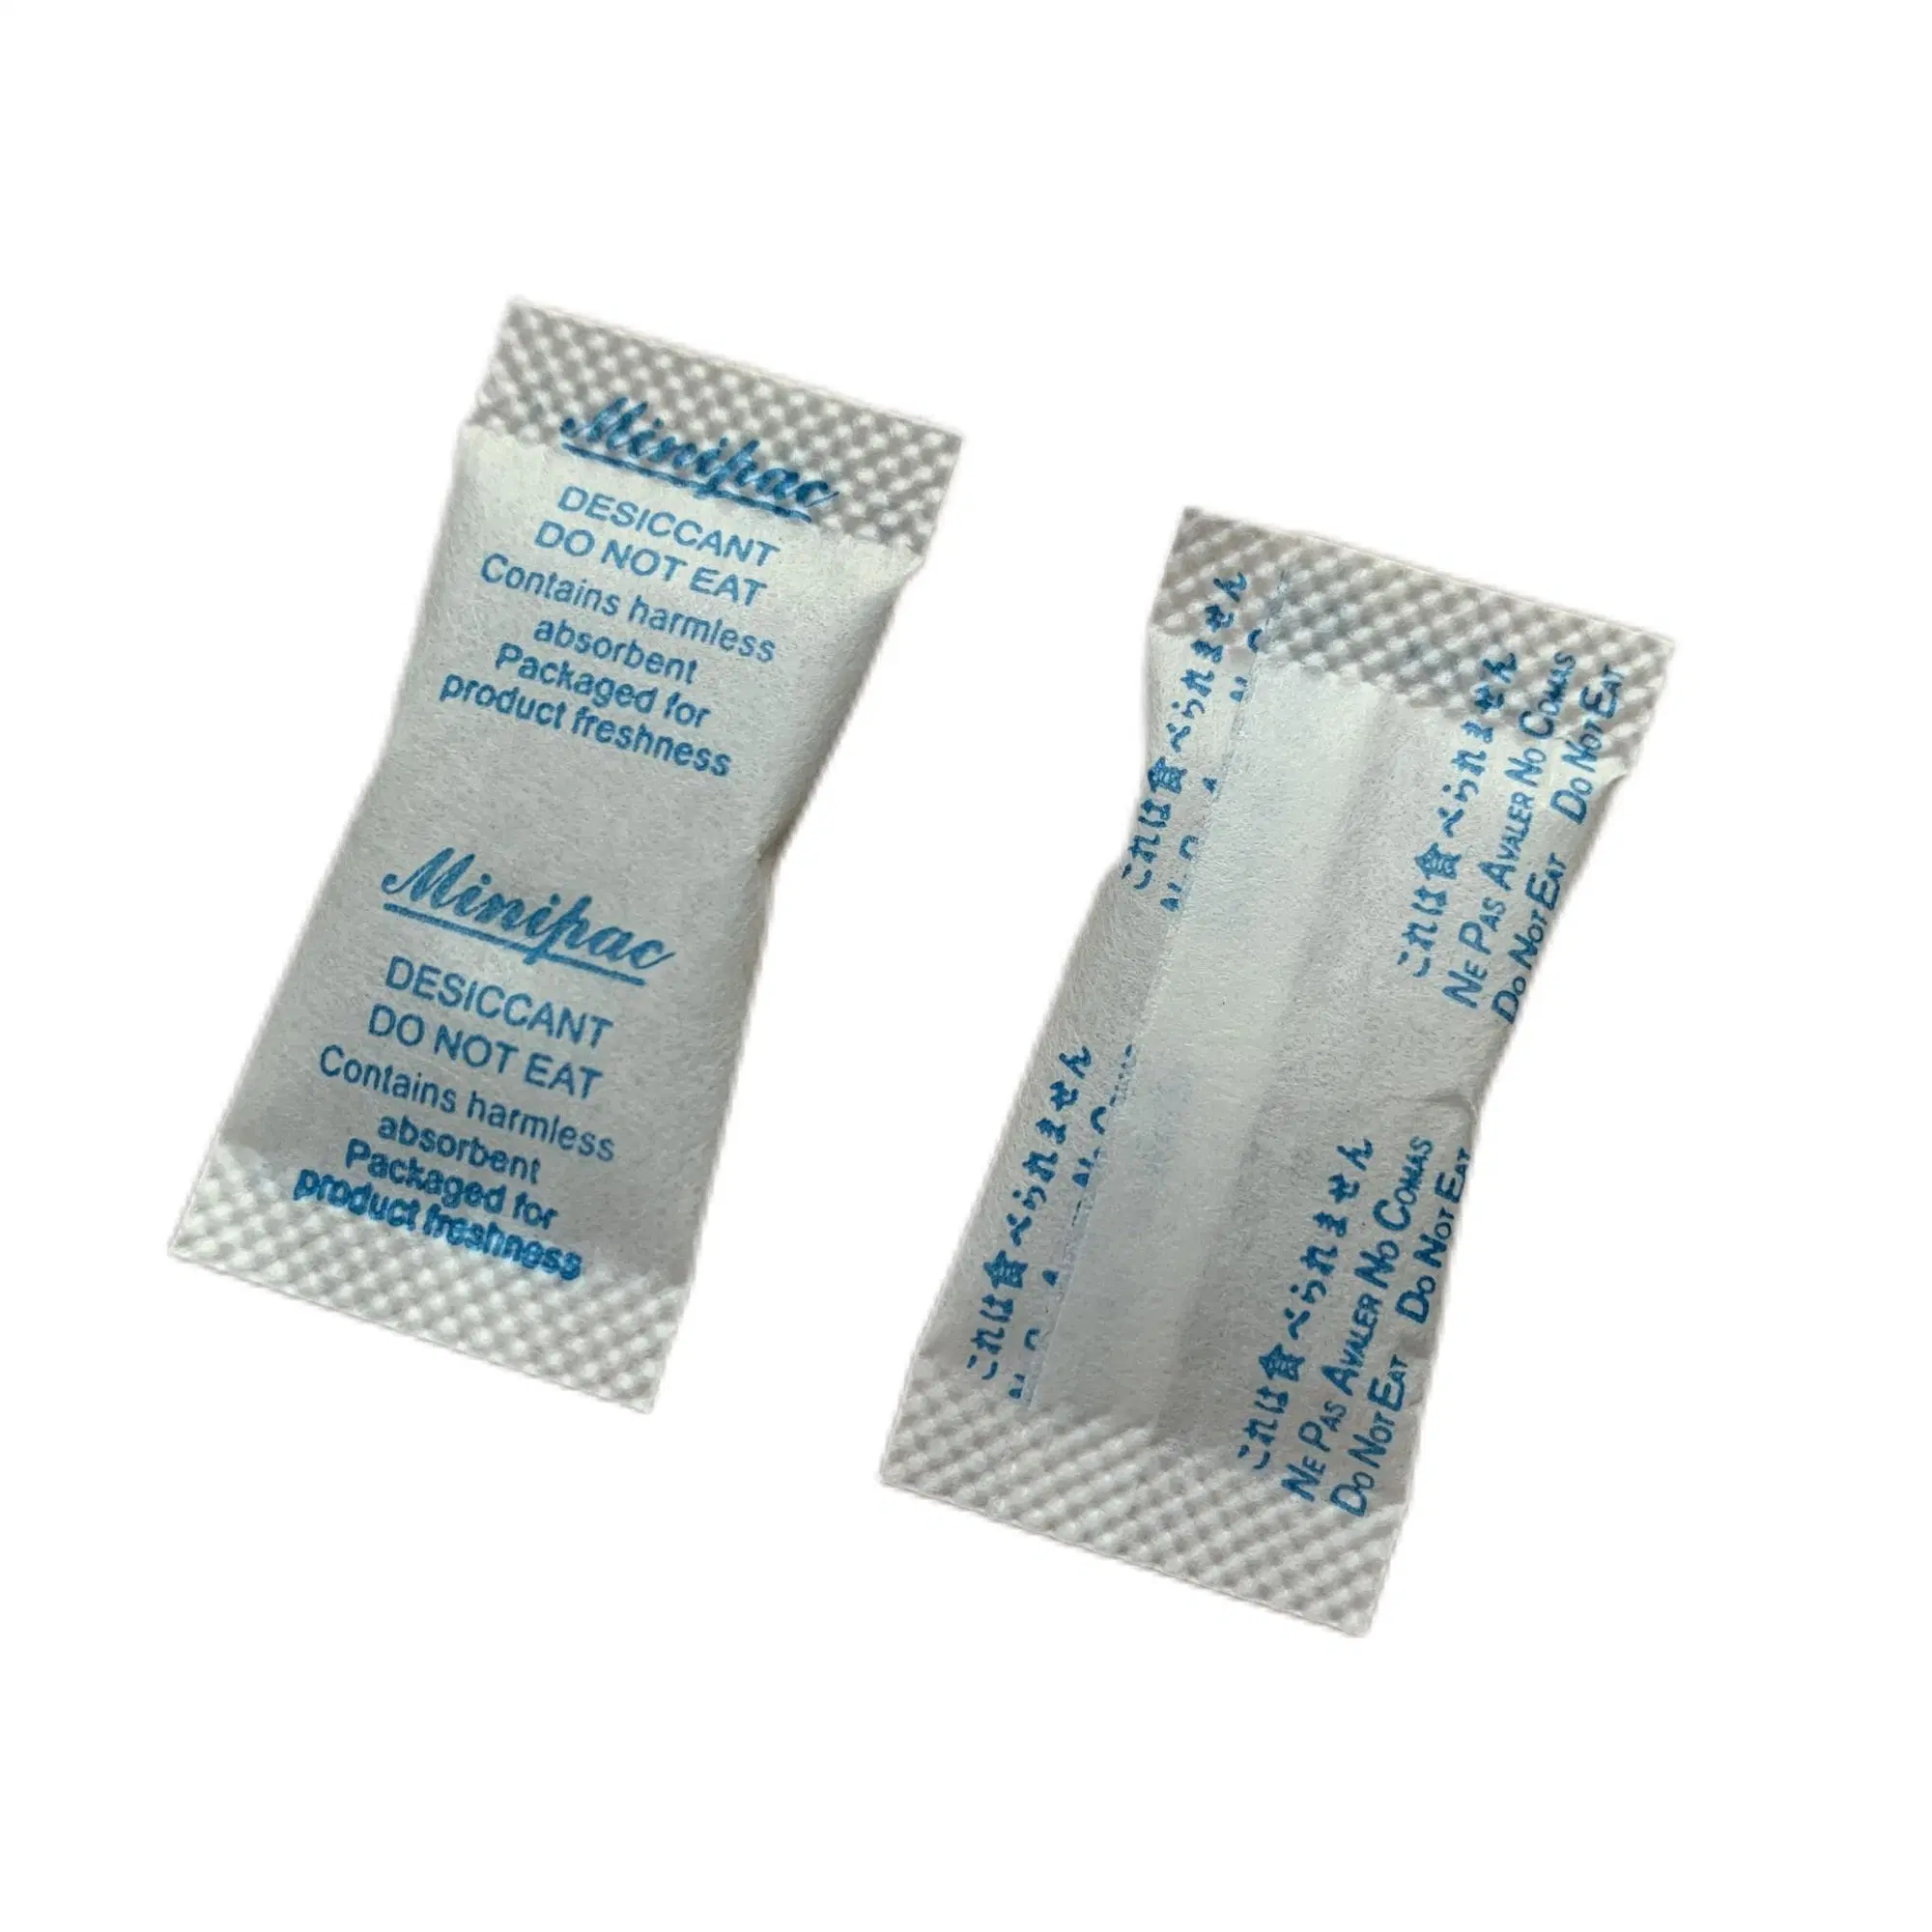 1G Kissenpak hohe Absorption White Silica Gel Beutel für Verpackung Der Prägnenz-Testkits